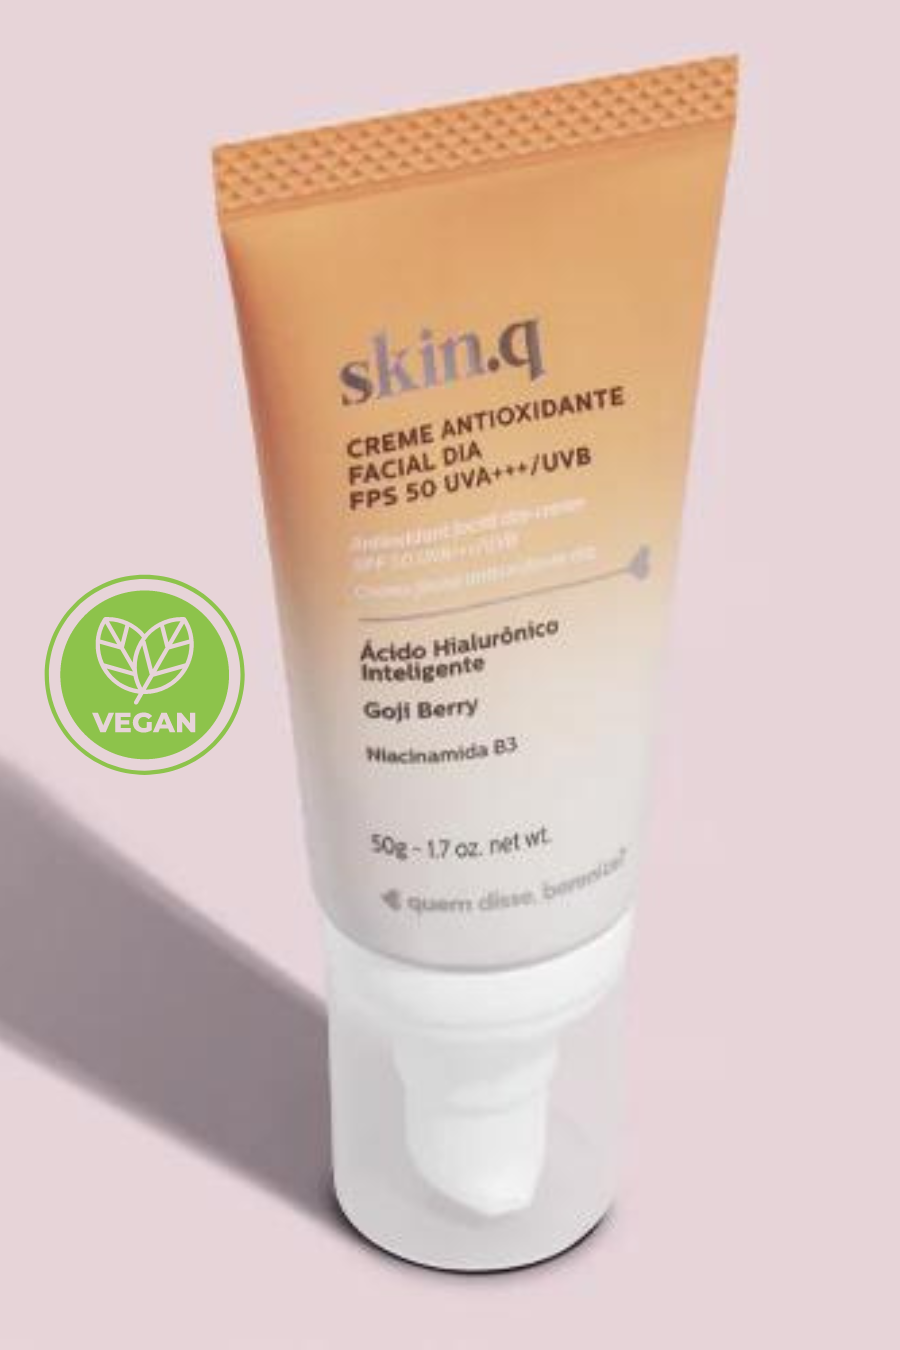 Skin.q Antioxidant gezichtsdagcrème SPF 50 UVA *** /UVB - (Veganistisch) 50 g.